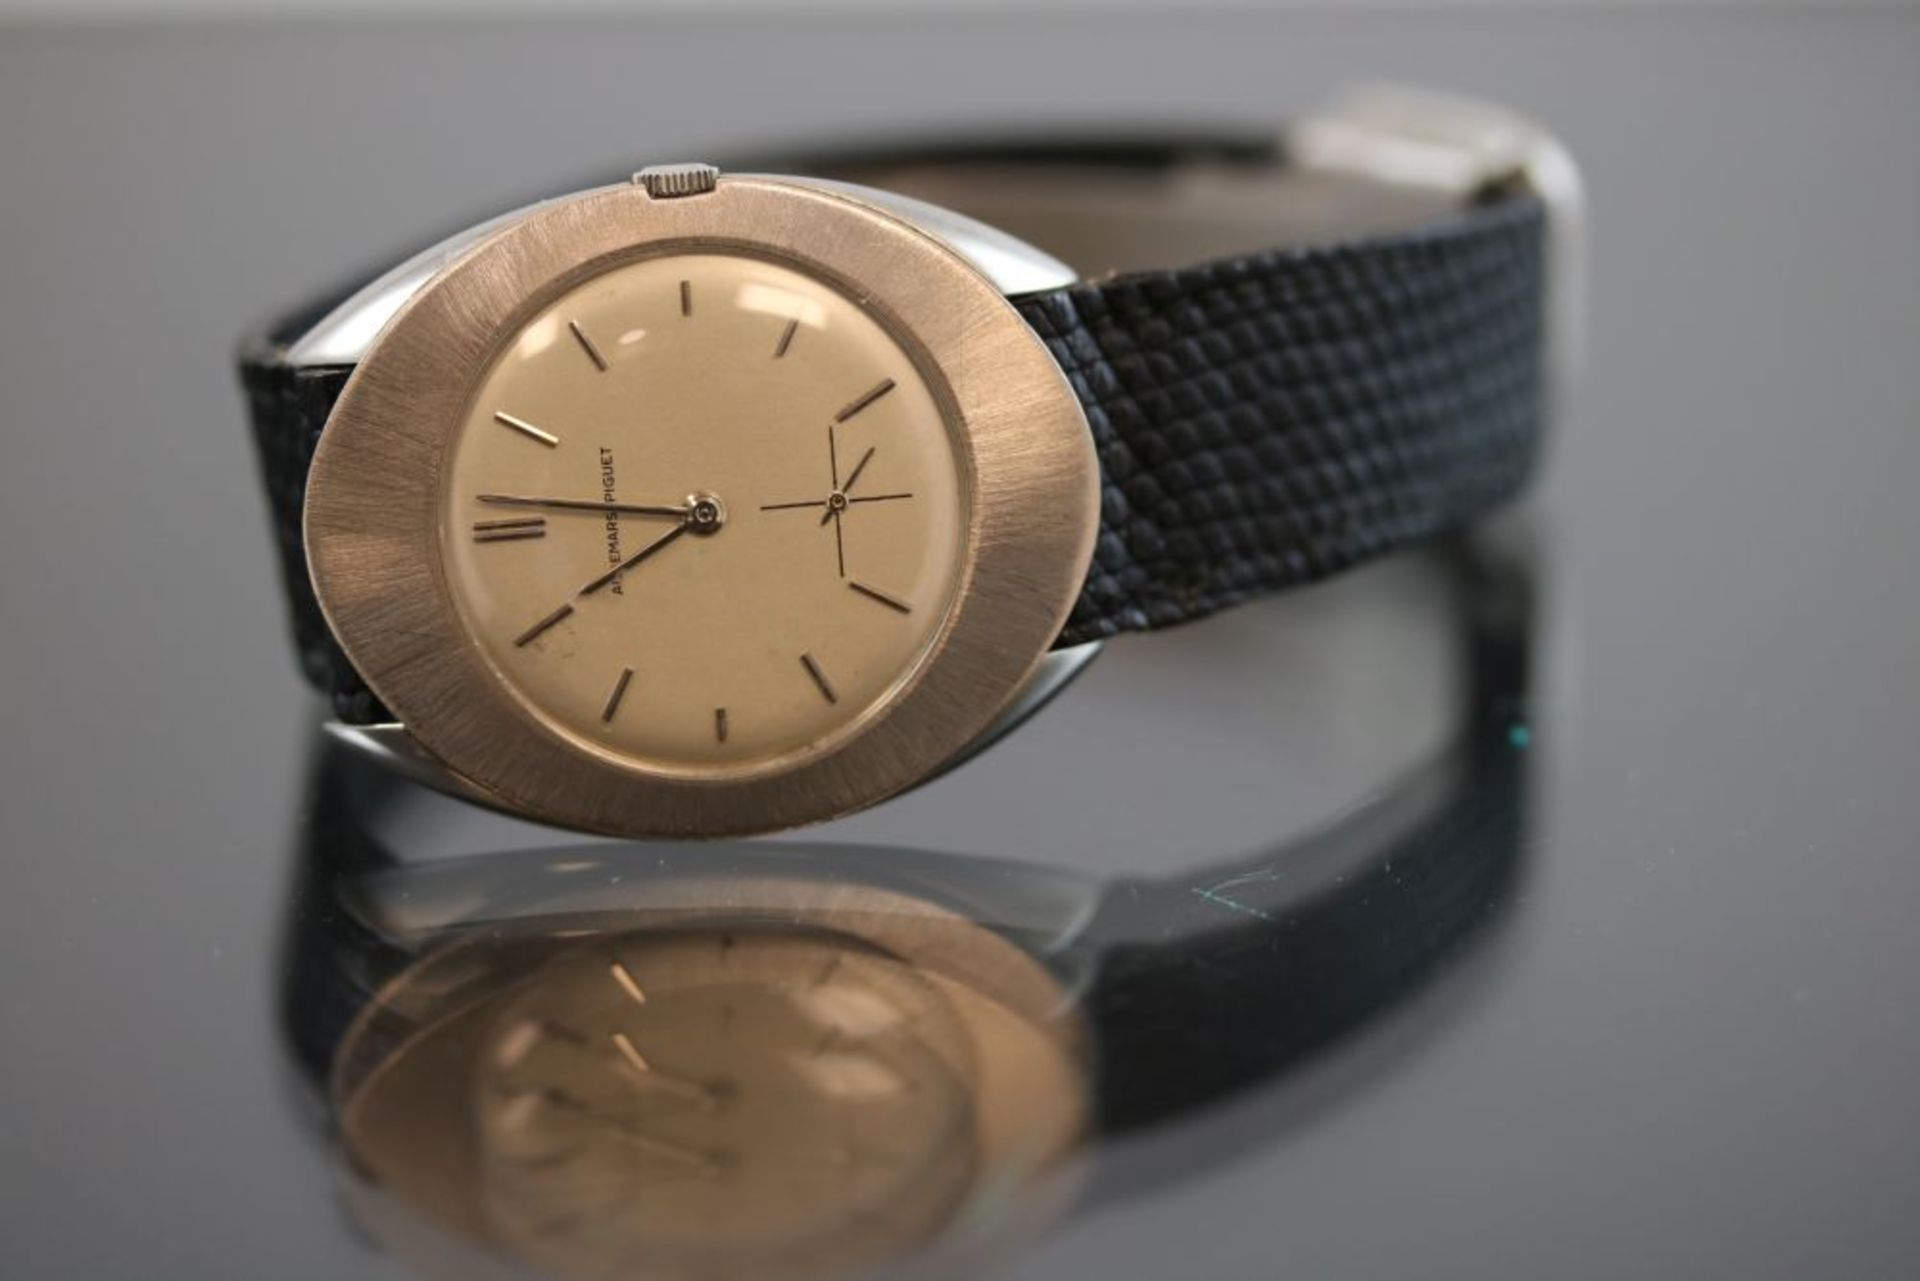 Audemar Piguet ArmbanduhrWerk: HandaufzugBand: Schwarzes LederbandFunktion: SekundenanzeigeGehäuse